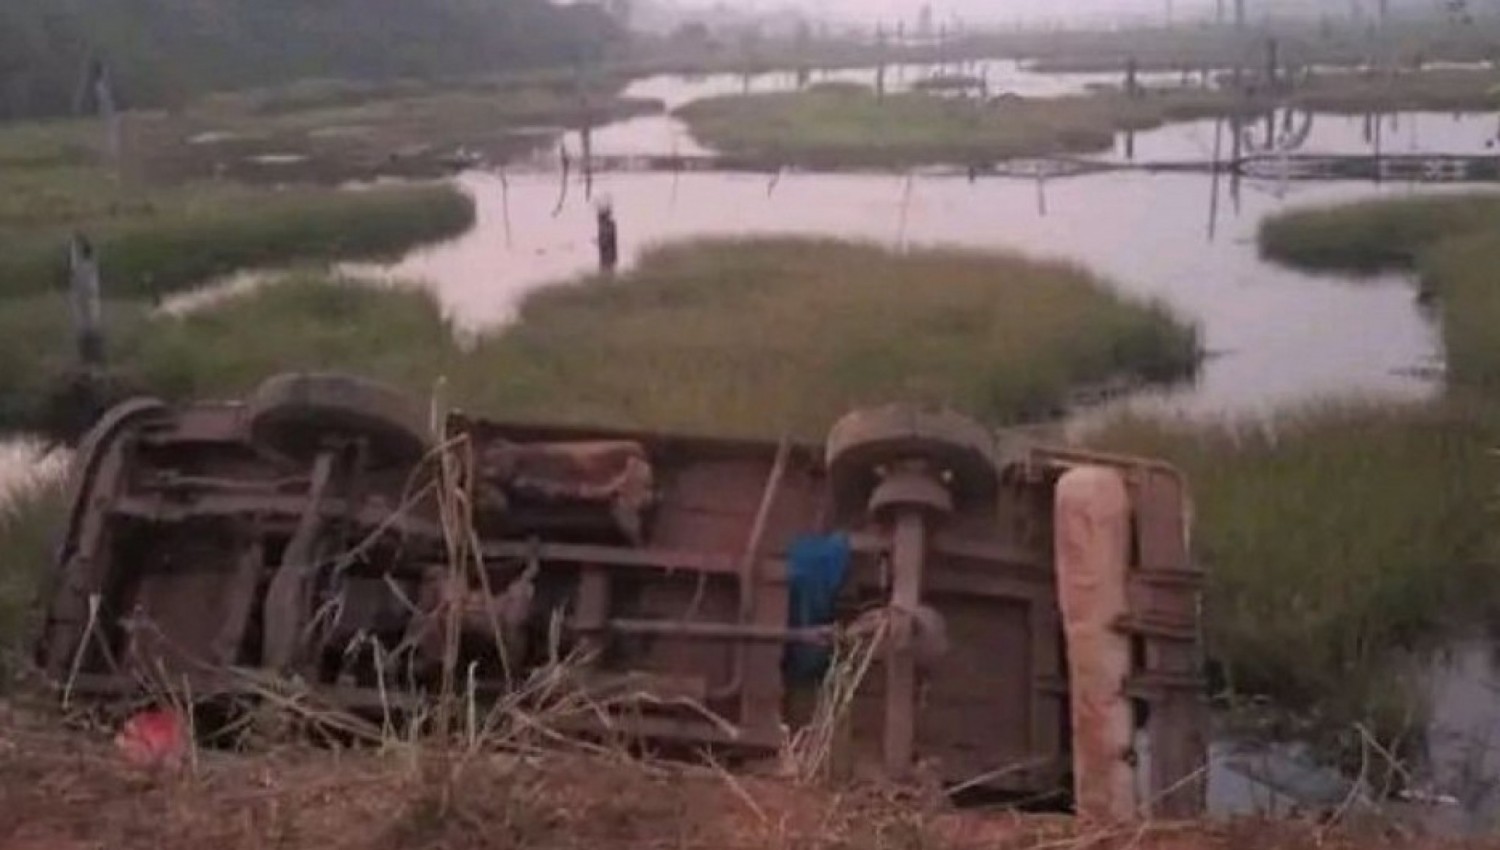 Côte d'Ivoire : Daloa, un mini-car termine sa course dans un fleuve, 3 morts et plusieurs blessés enregistrés